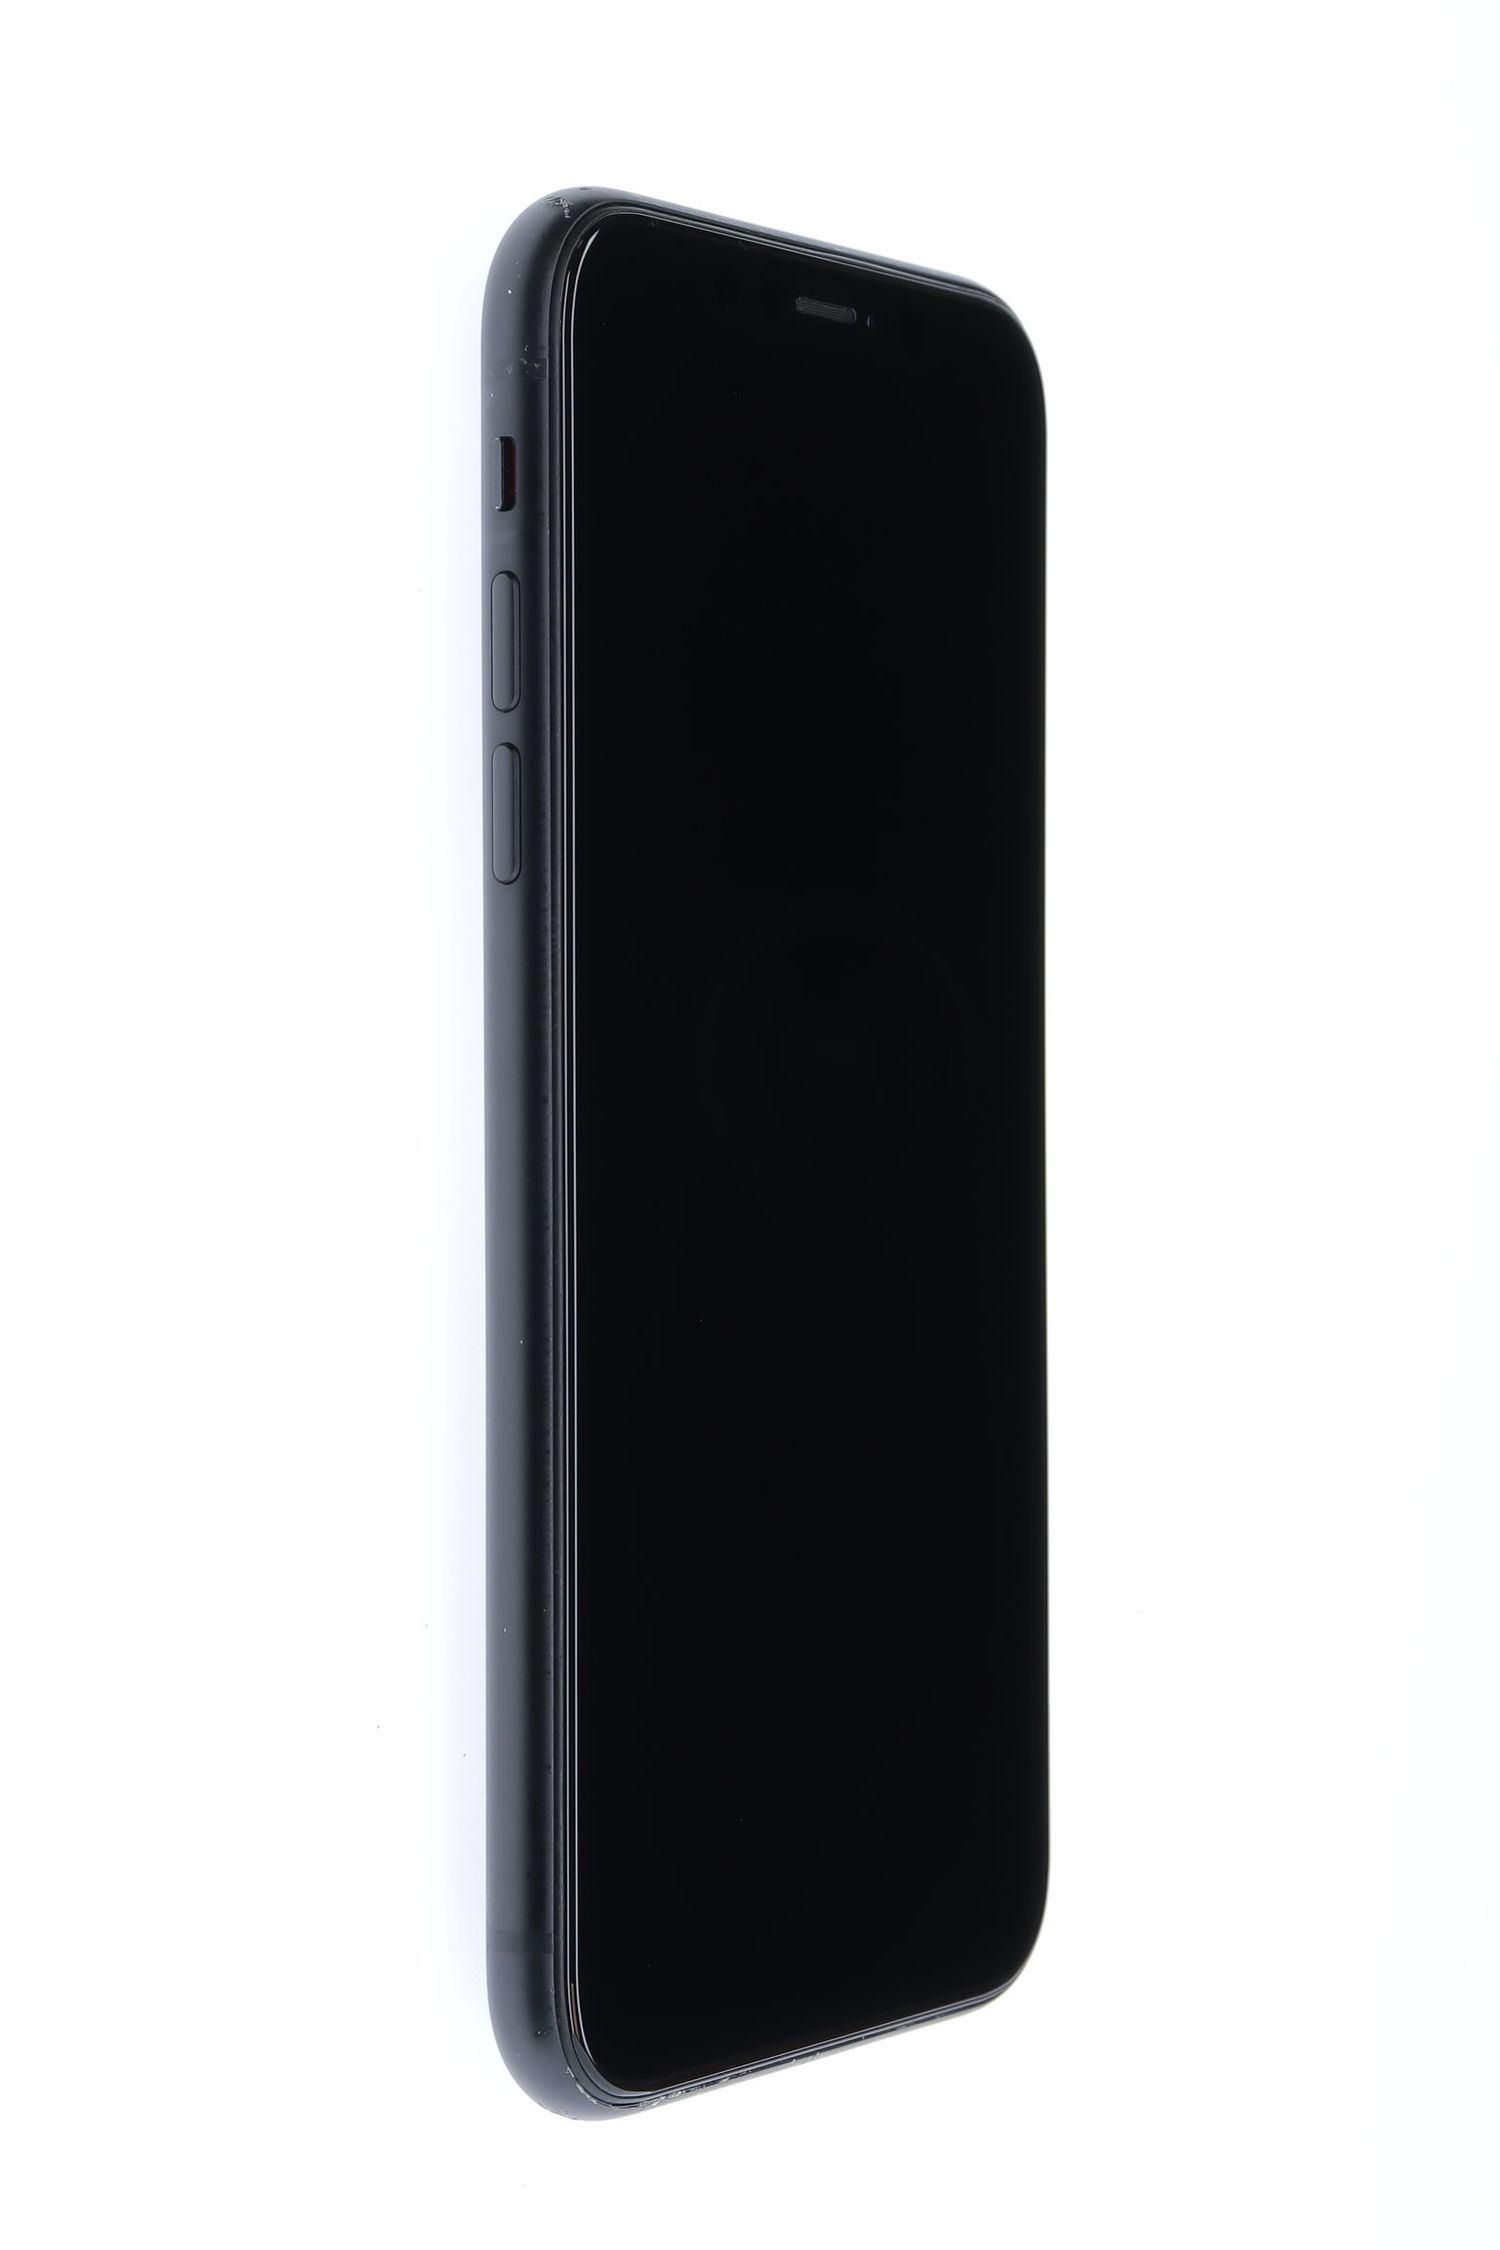 Telefon mobil Apple iPhone XR, Black, 128 GB, Foarte Bun